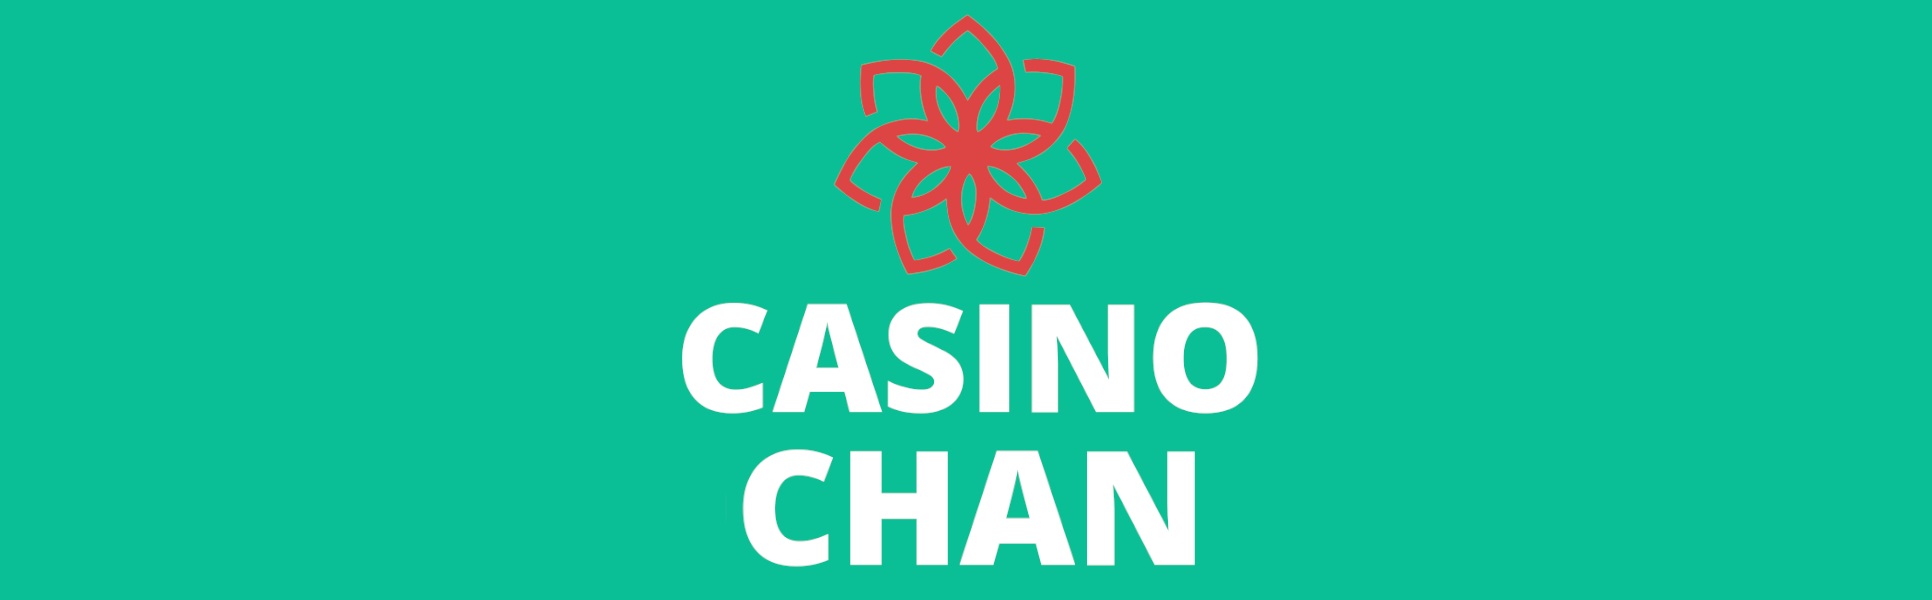 Massimizza le tue vincite quotidiane con Casino Chan